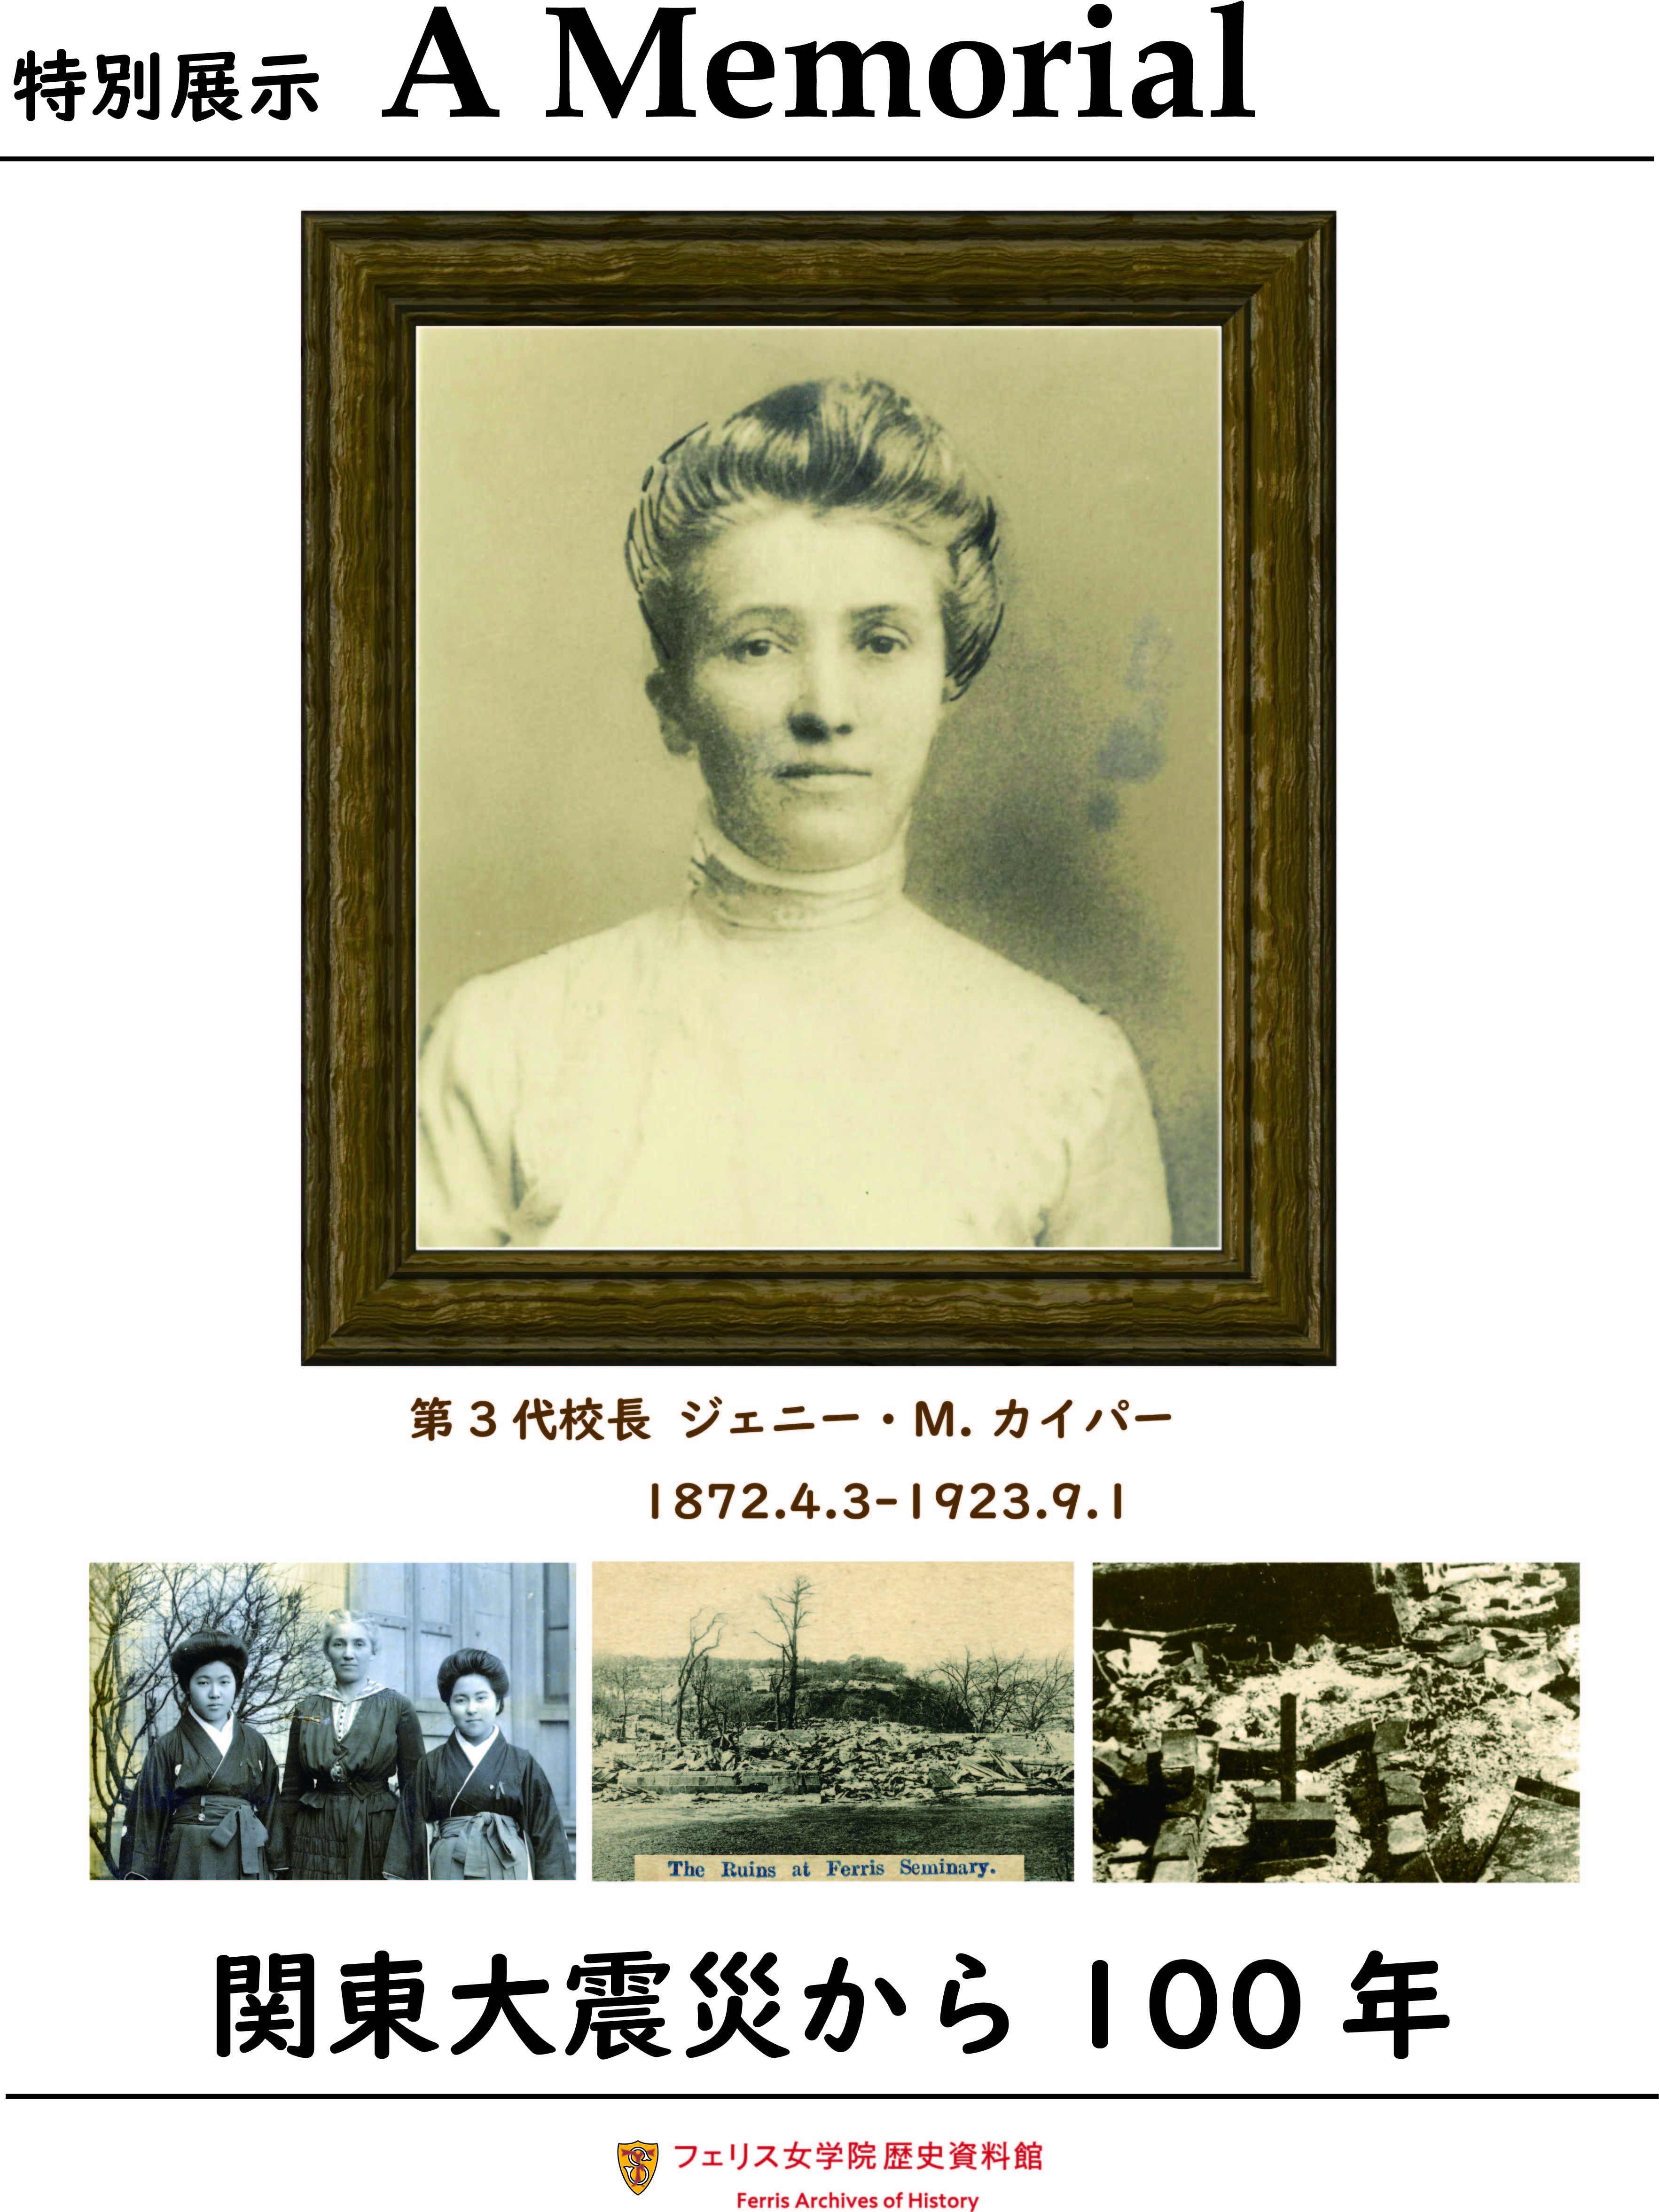 フェリス女学院歴史資料館で特別展示「A Memorial ジェニー・M. カイパー　関東大震災から100年」を開催